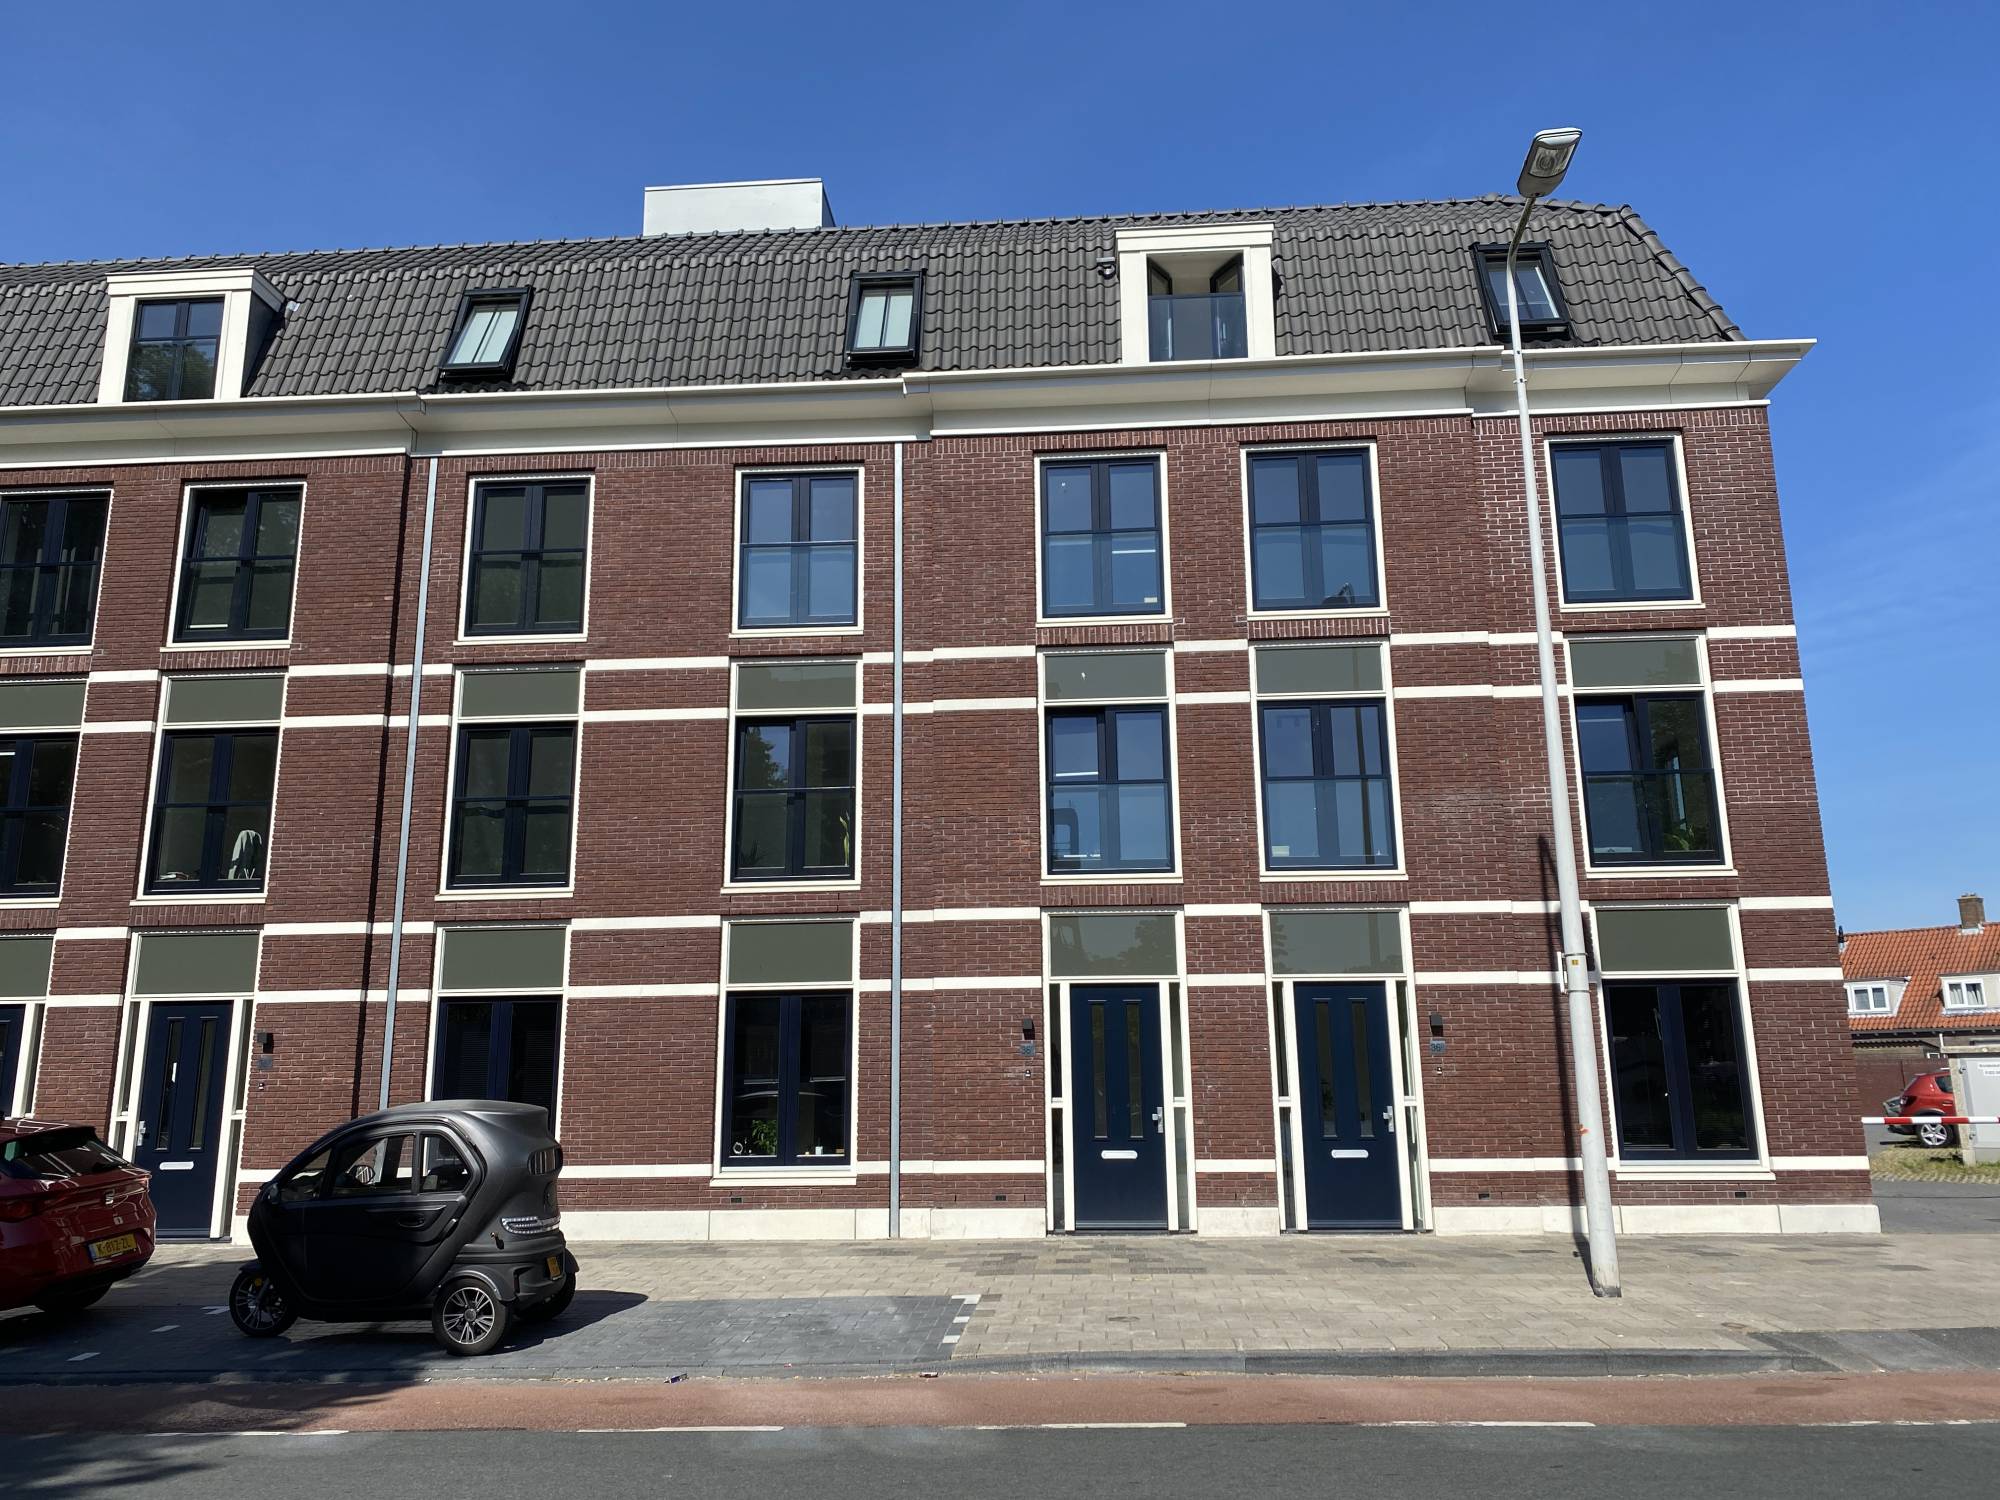 Bekijk foto 1/15 van apartment in Leiden